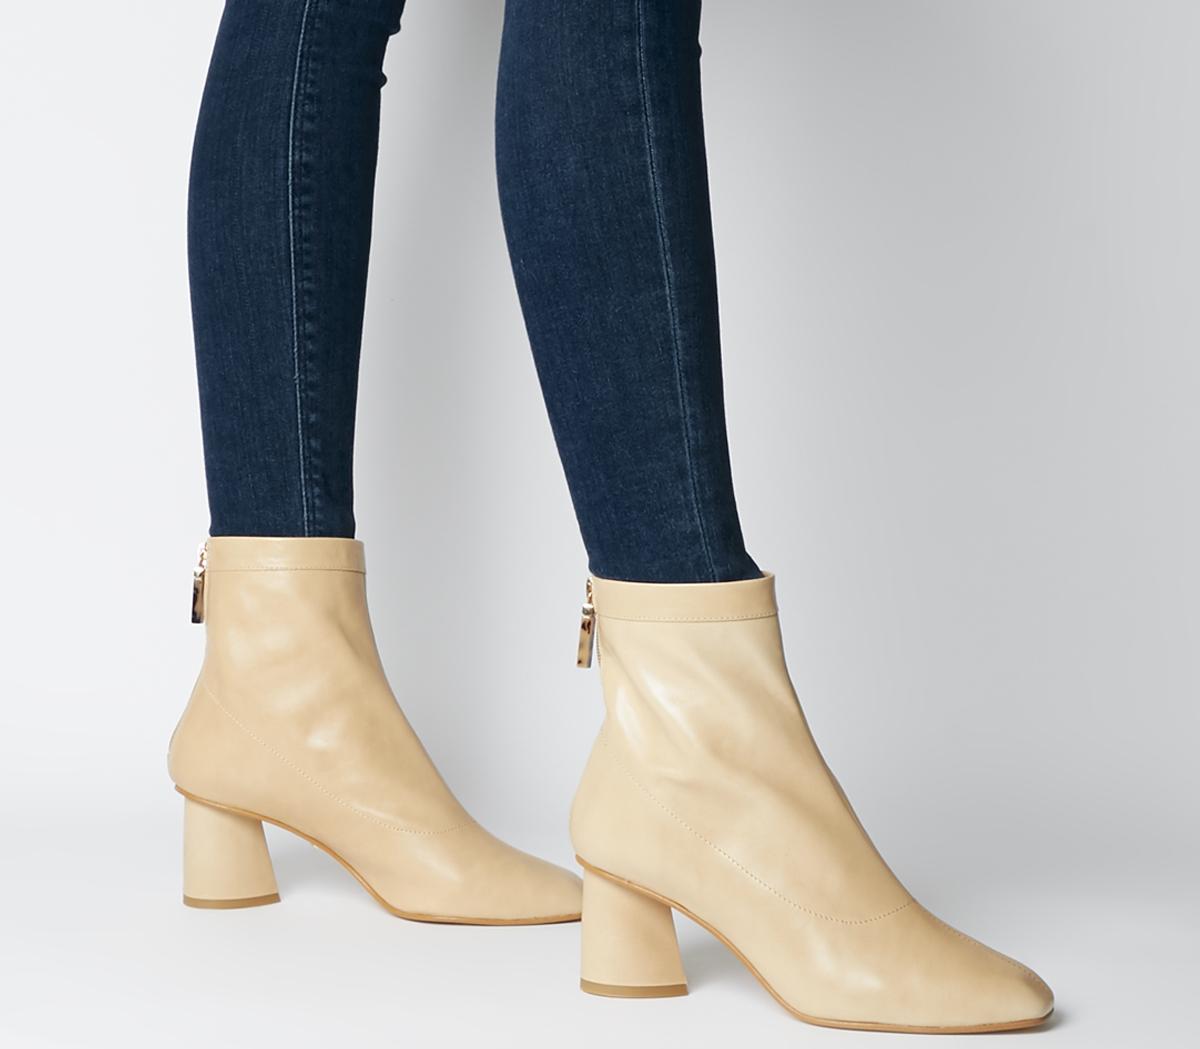 camel high heel boots